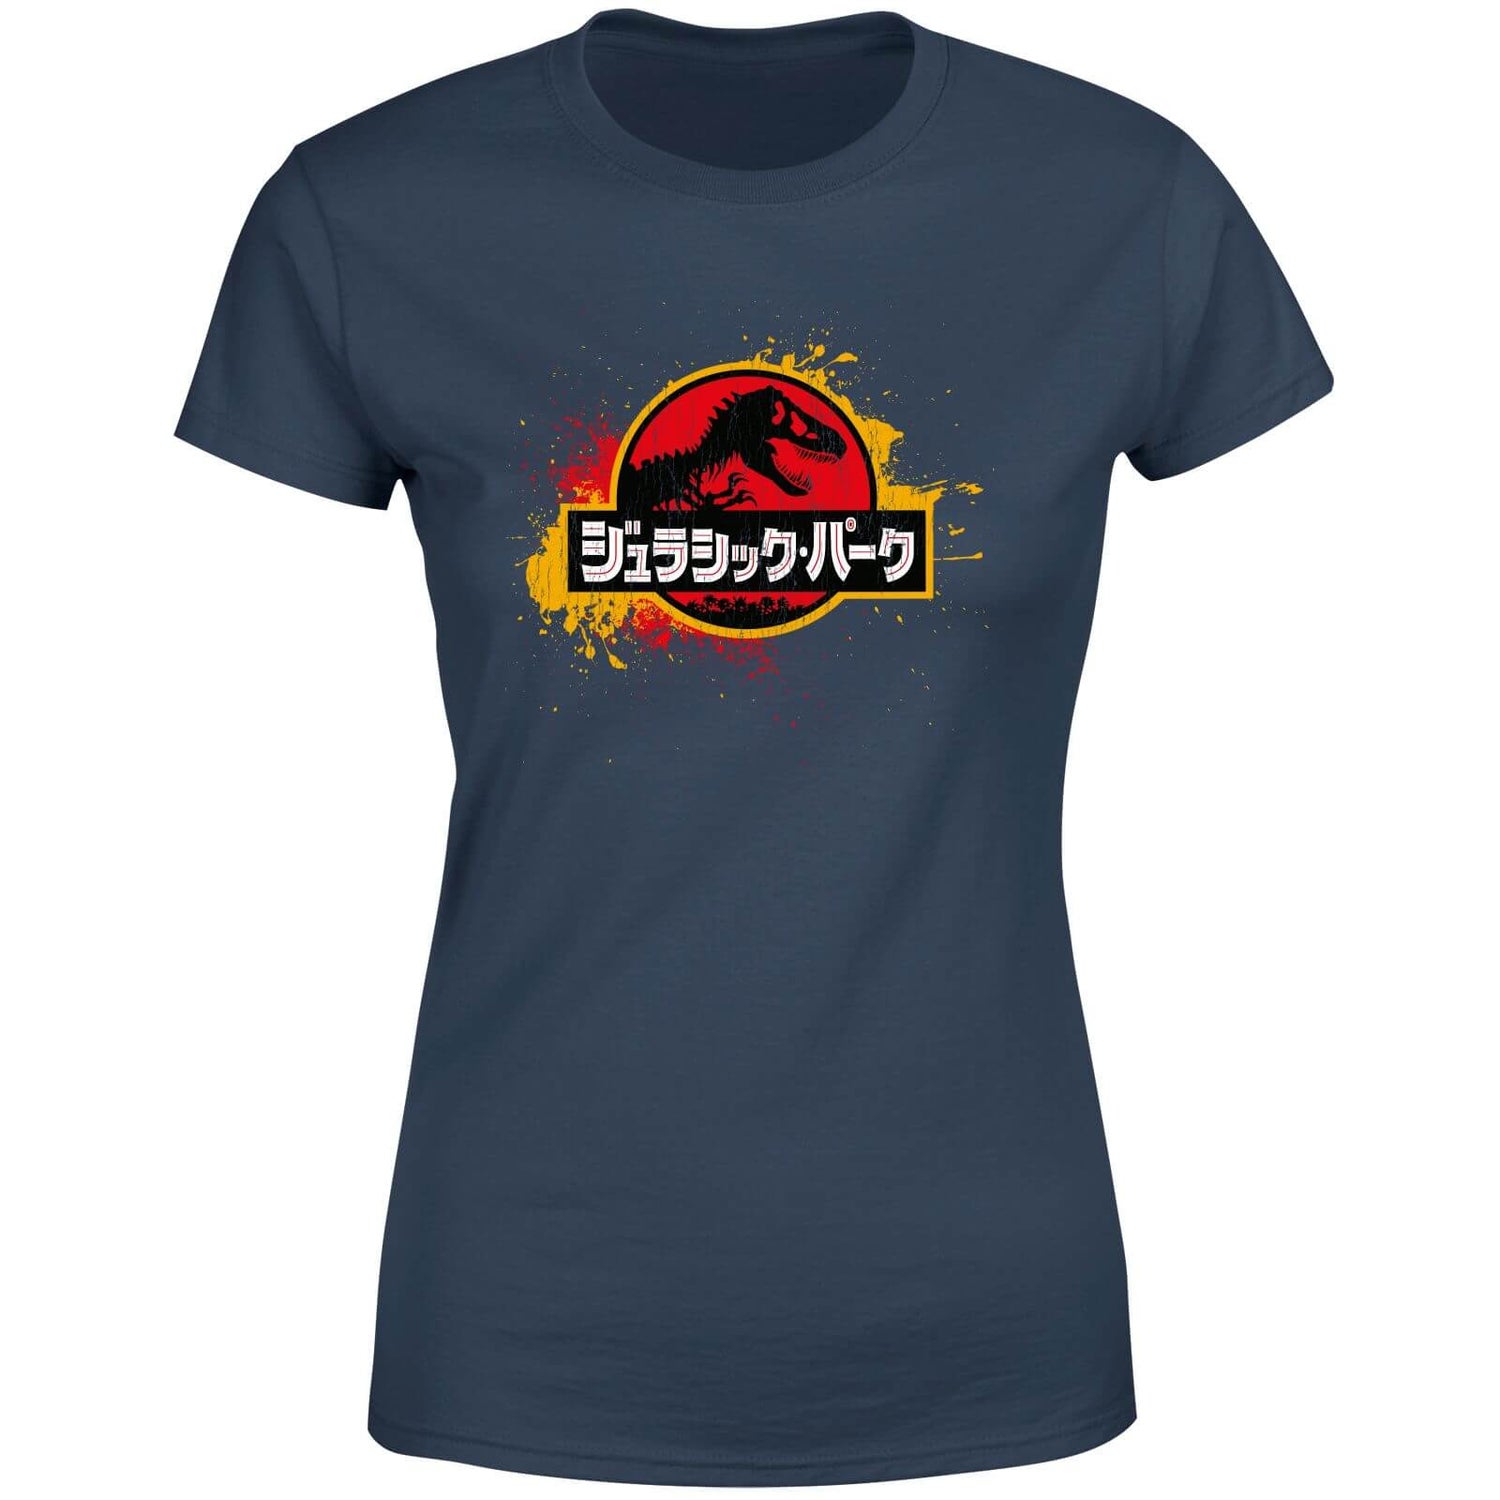 Jurassic Park Women's T-Shirt - Navy